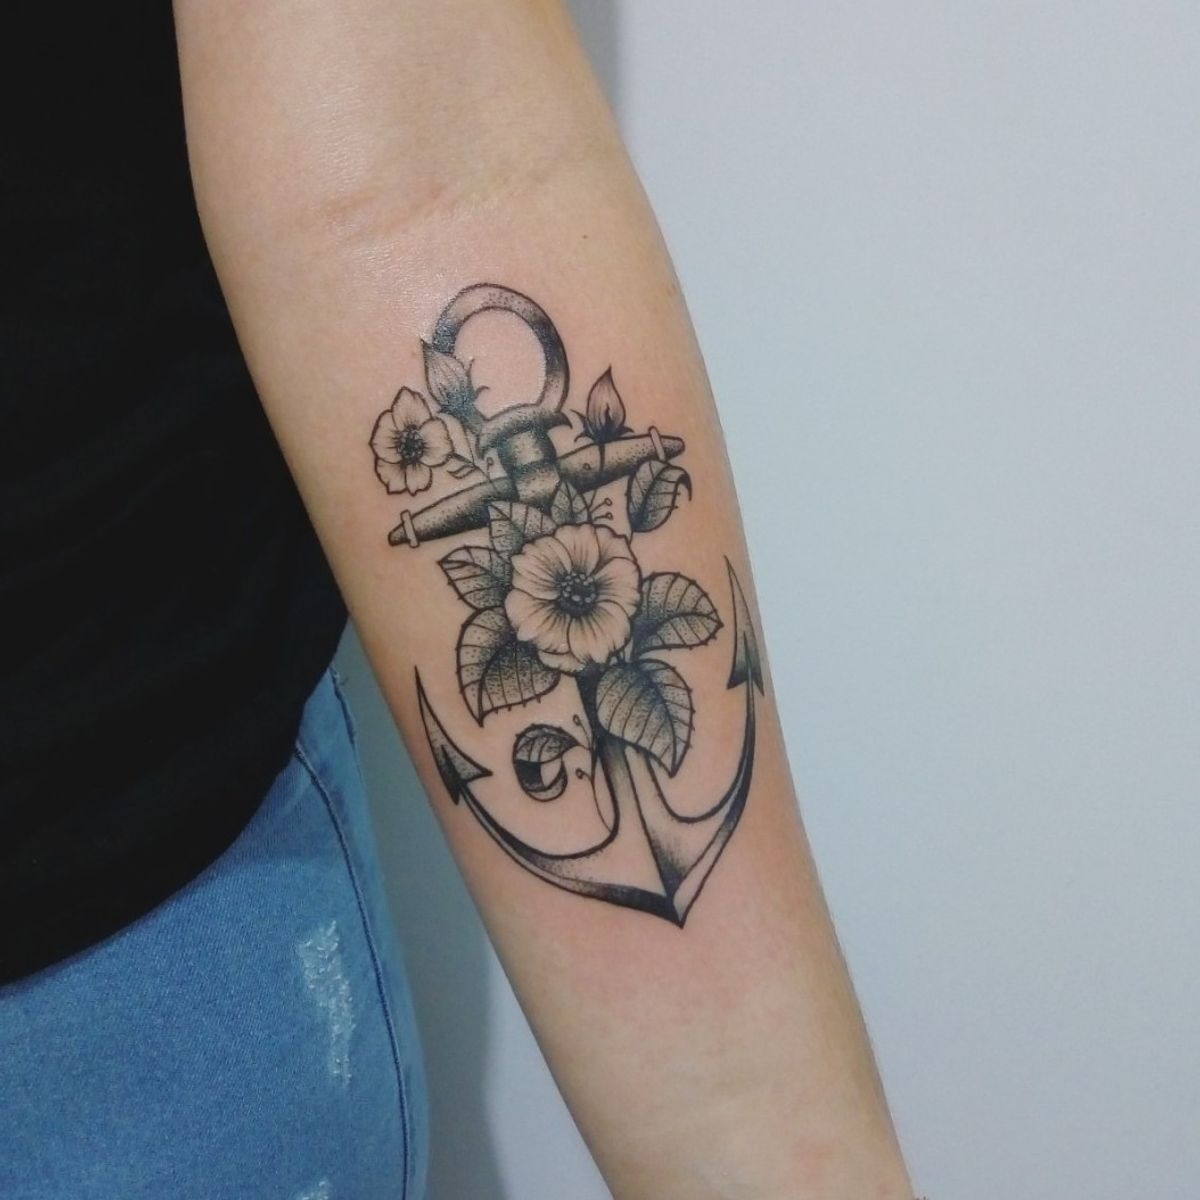 Tattoo uploaded by Cristian Rafael • Âncora #tattoo #tattoos # ...